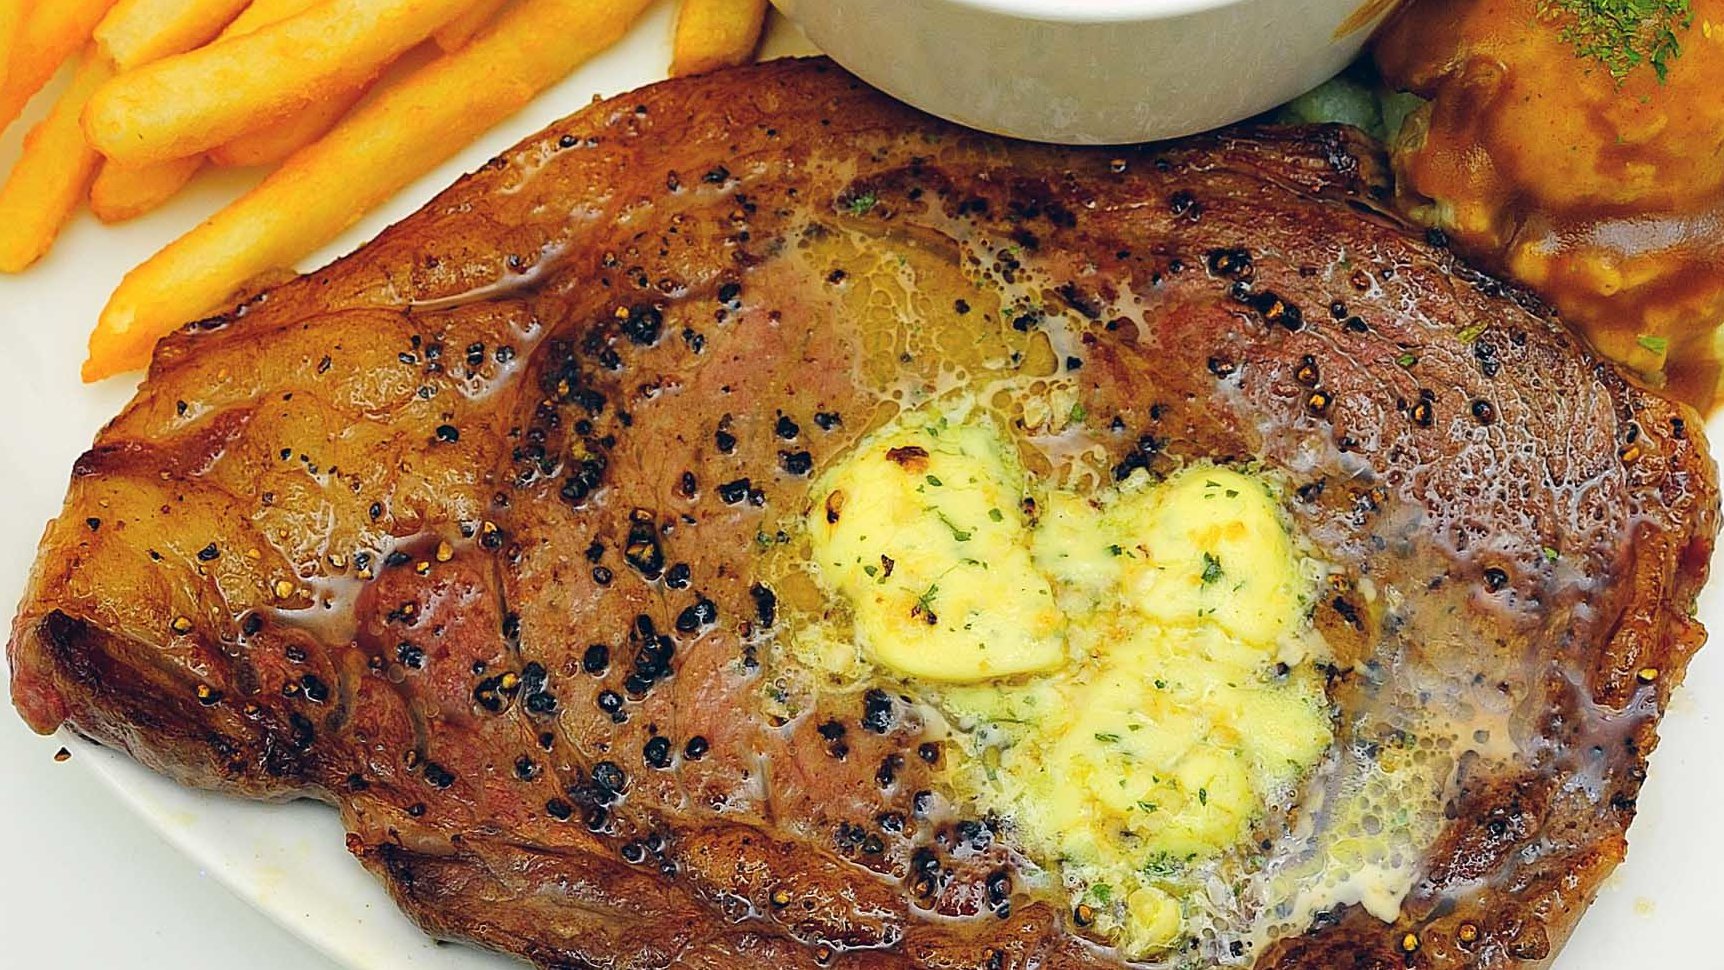 Steak Essen in Oberfranken - Teller gefüllt mit frischem Rinder-Steak, Kräuterbutter, gebratenen Kartoffeln und Salat